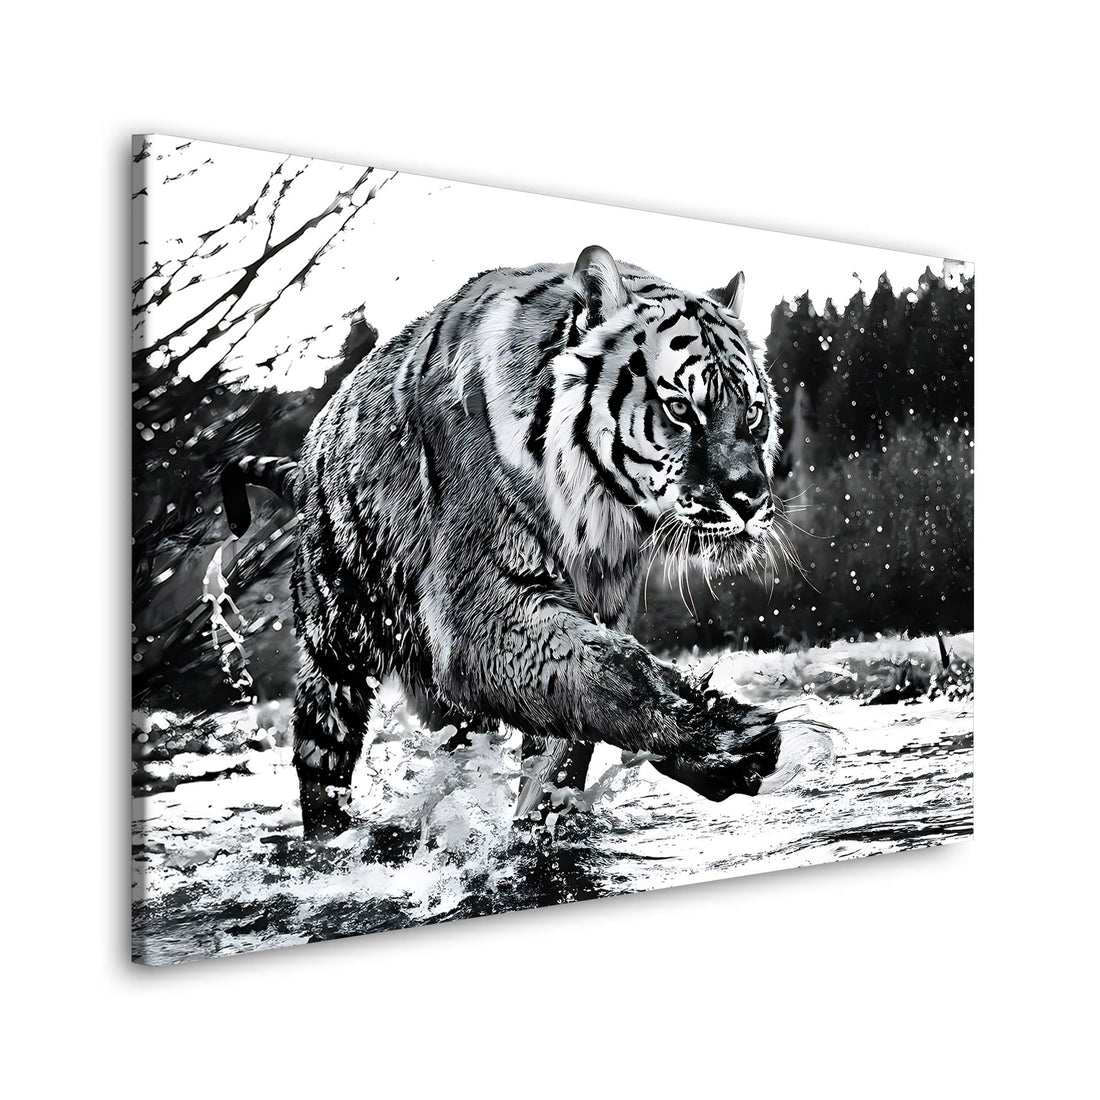 Wandbild Tiger im Wasser, schwarz weiß